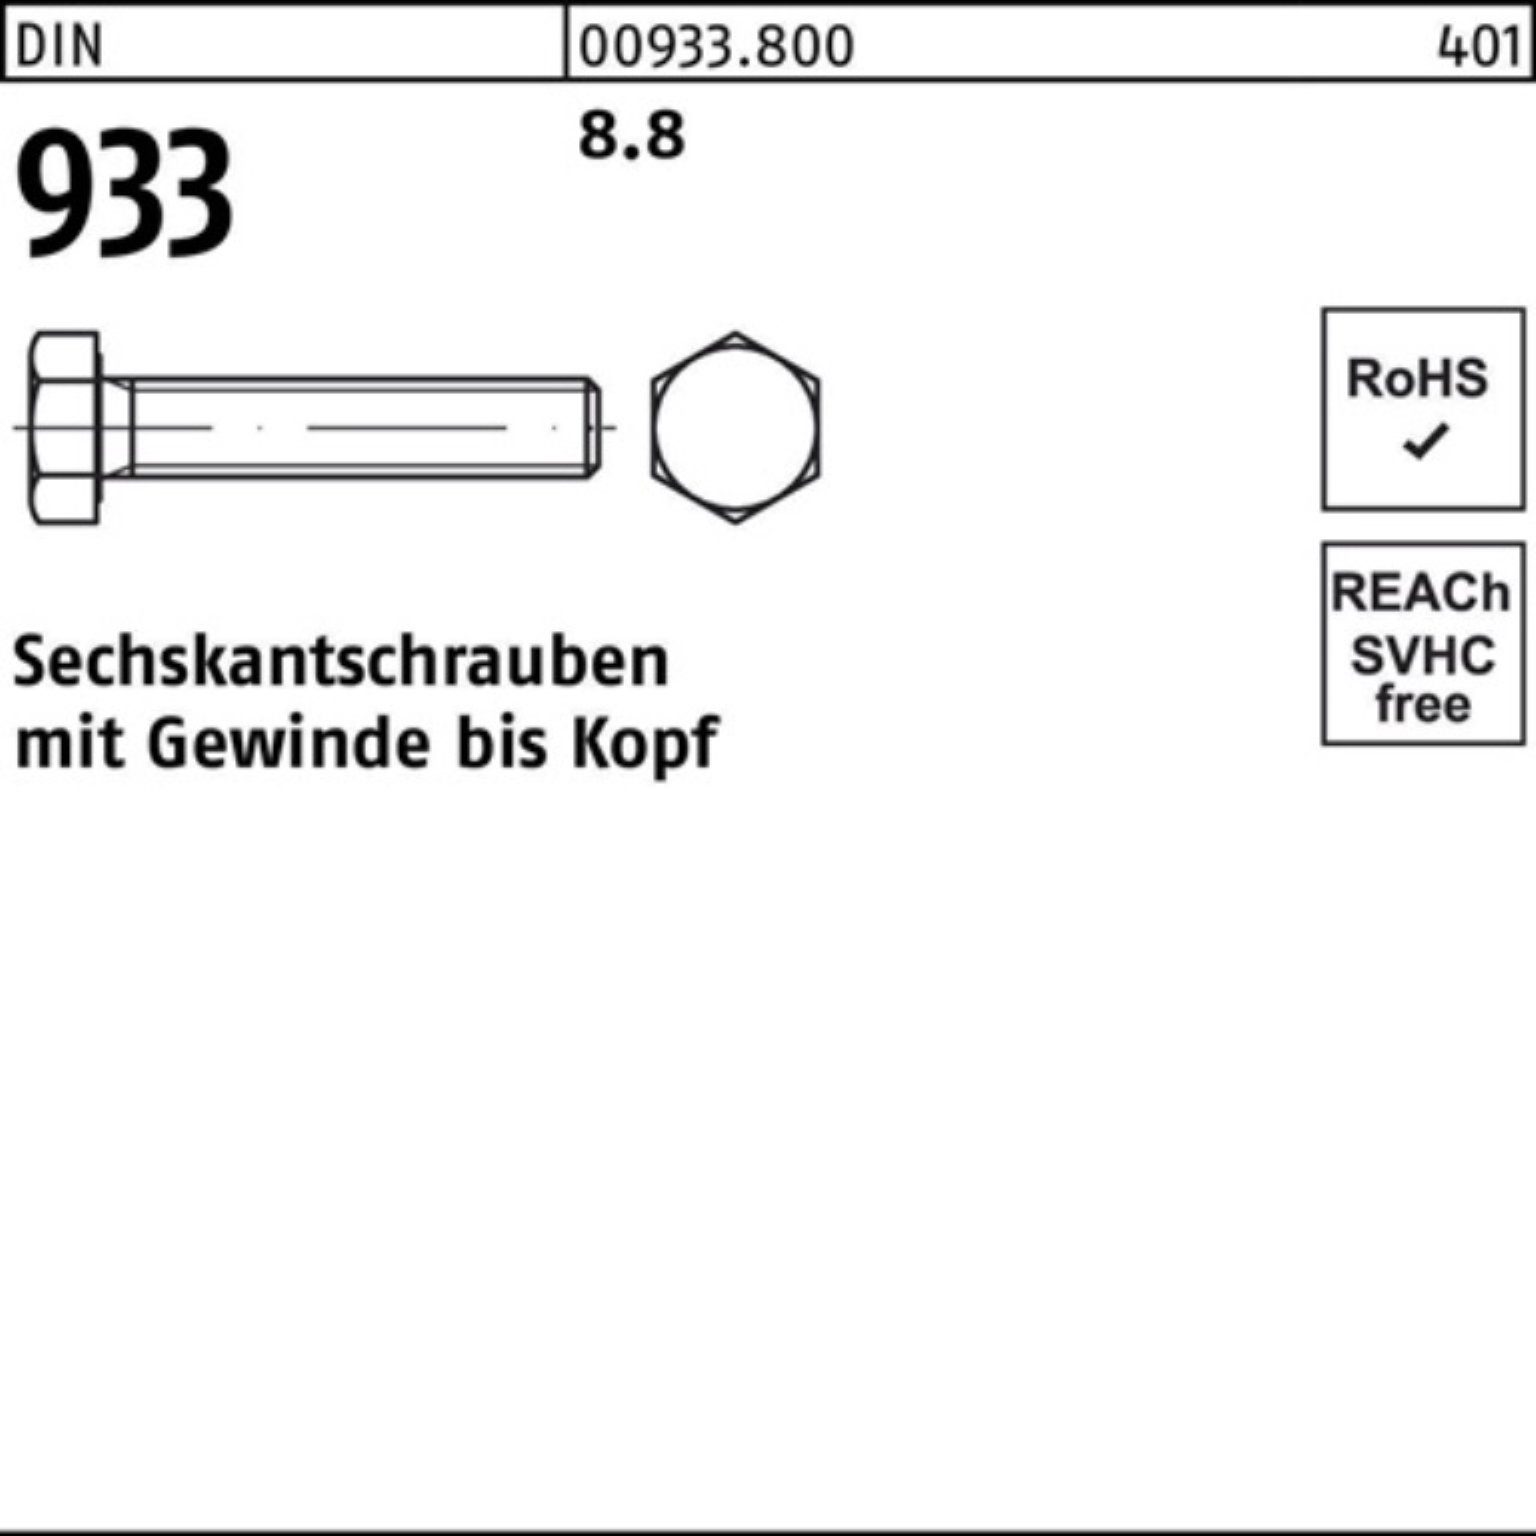 80 Sechskantschraube DIN DIN 1 Stück 933 8.8 VG Pack 8 100er 933 M36x Reyher Sechskantschraube